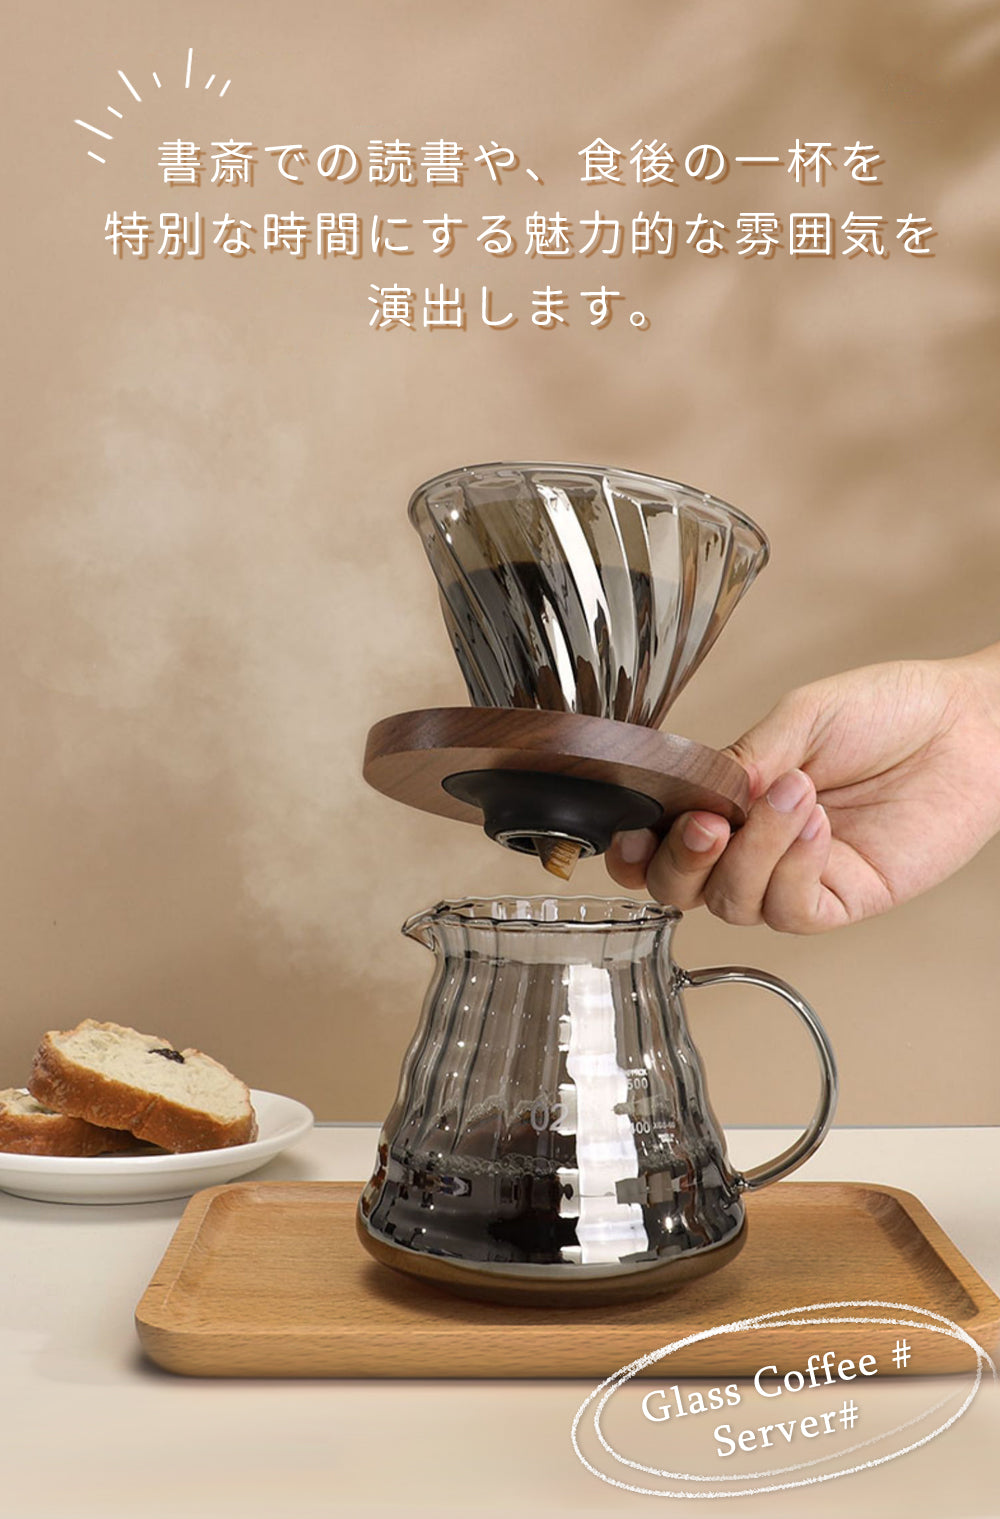 IwaiLoft 世界各国で高い評価を得ている コーヒーサーバー  ガラスドリッパー セット コーヒーポット 500ml V60 コーヒードリッパー 耐熱ガラス 4cup 円錐型 ハンドドリッパー ドリッパーコーヒー コーヒー用品 珈琲 コーヒー器具 おしゃれ